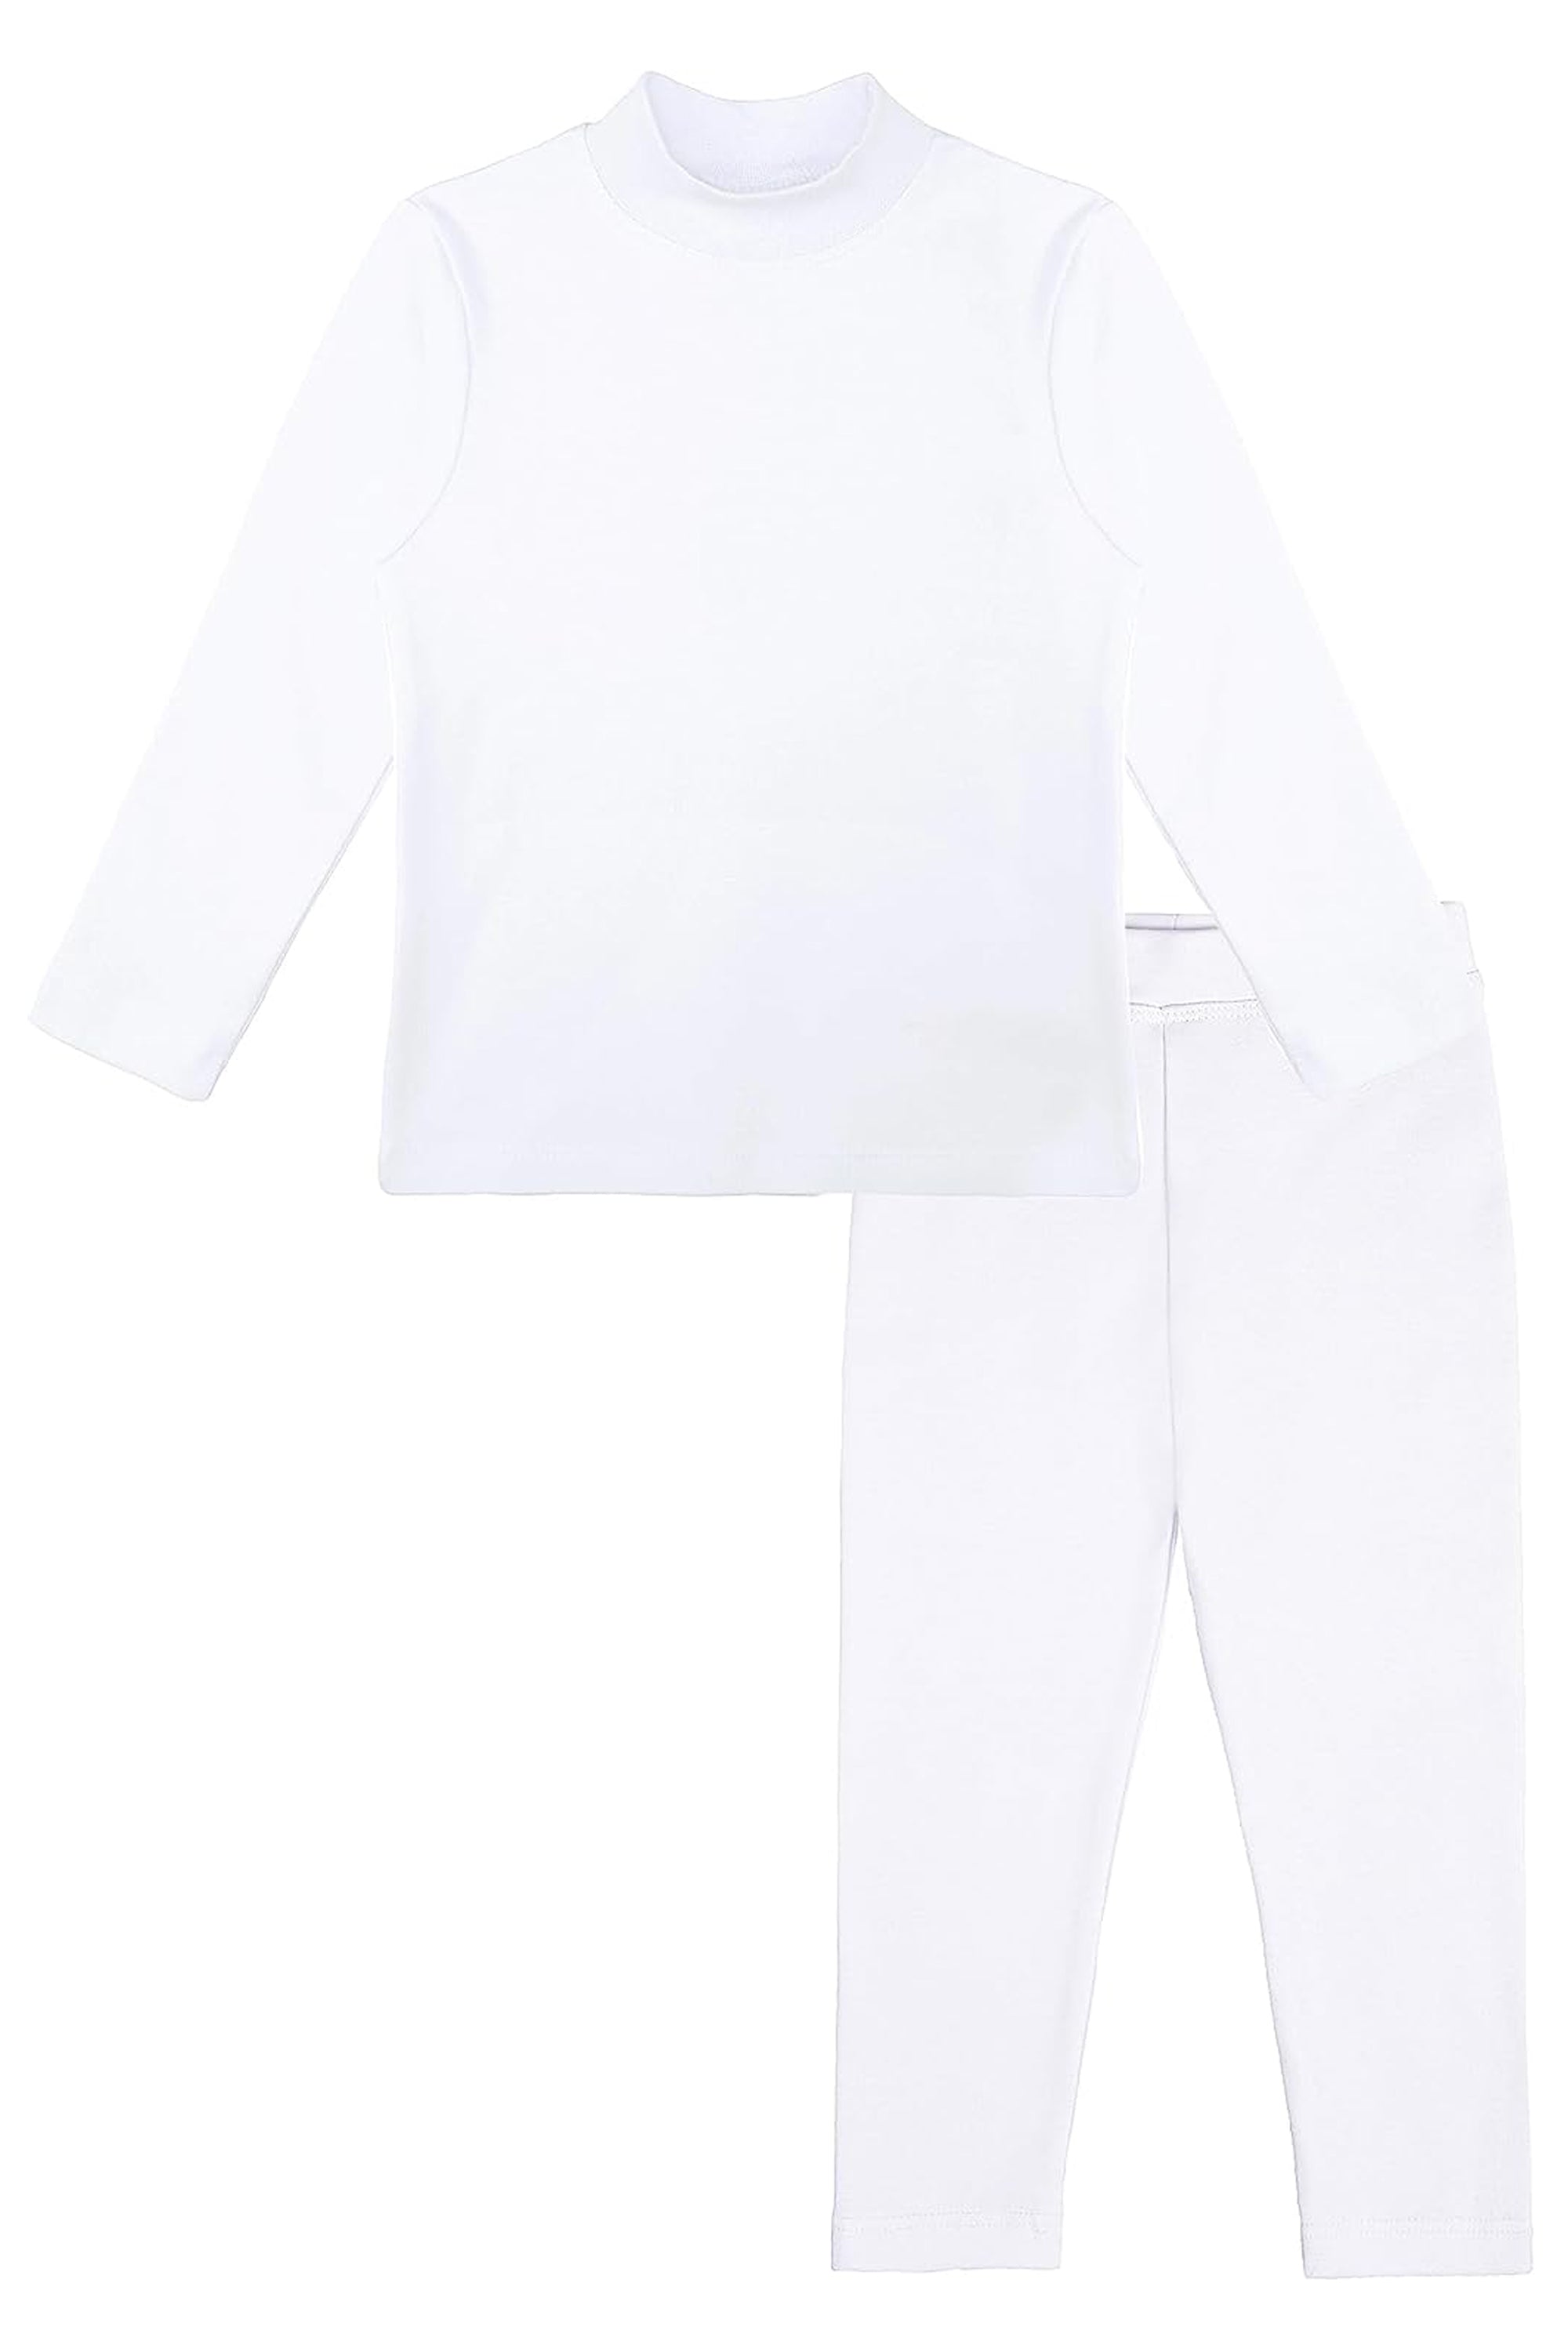 Girls Thermal Underwear Set (10/12, White)